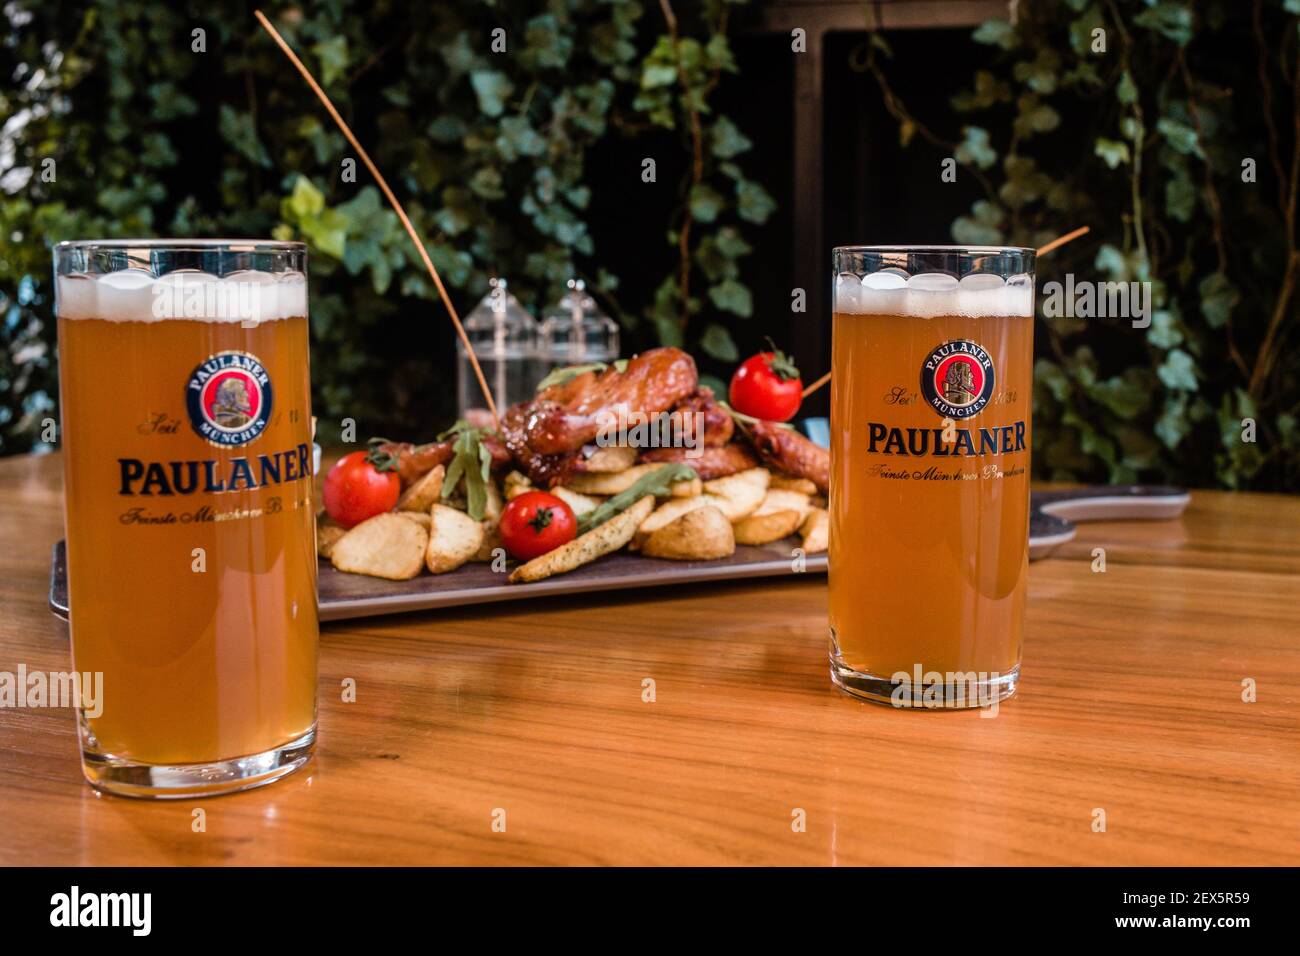 BRCKO, BOSNIEN UND HERZEGOWINA - 05. Dezember 2018: Teller mit leckeren  Speisen und Paulaner Bier Stockfotografie - Alamy